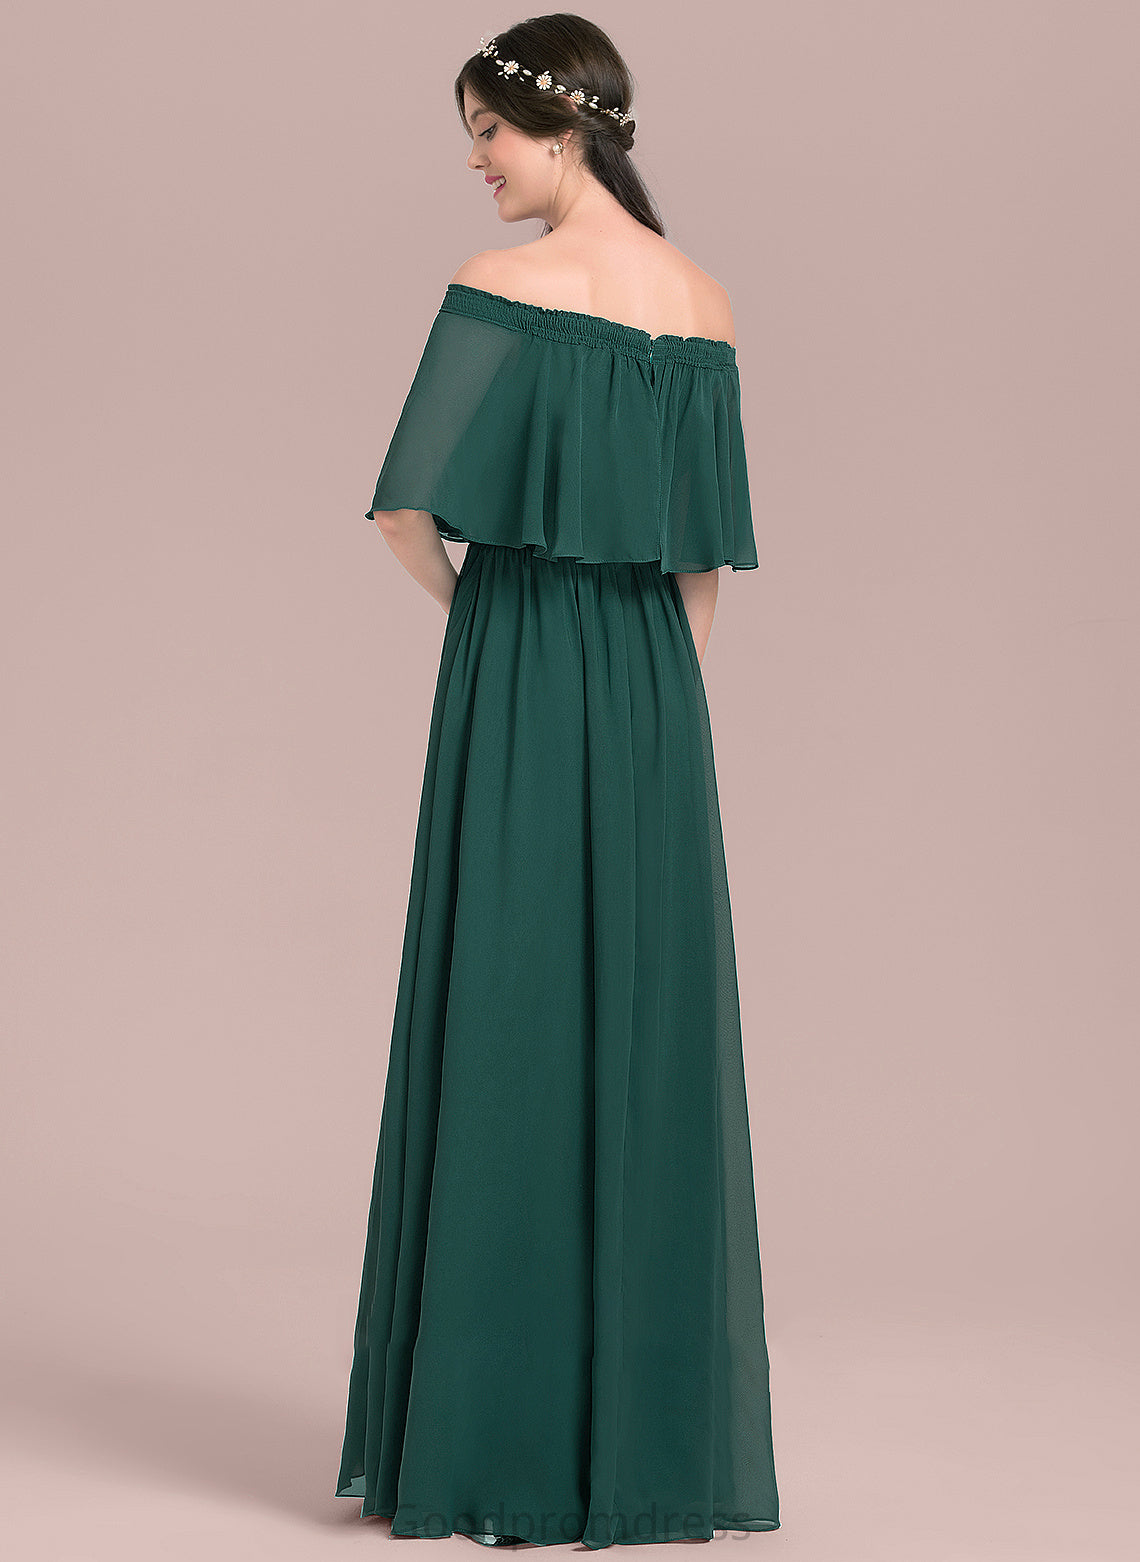 A-Line Neckline SplitFront Length Off-the-Shoulder Embellishment Fabric Silhouette Floor-Length Emelia A-Line/Princess Floor Length Bridesmaid Dresses